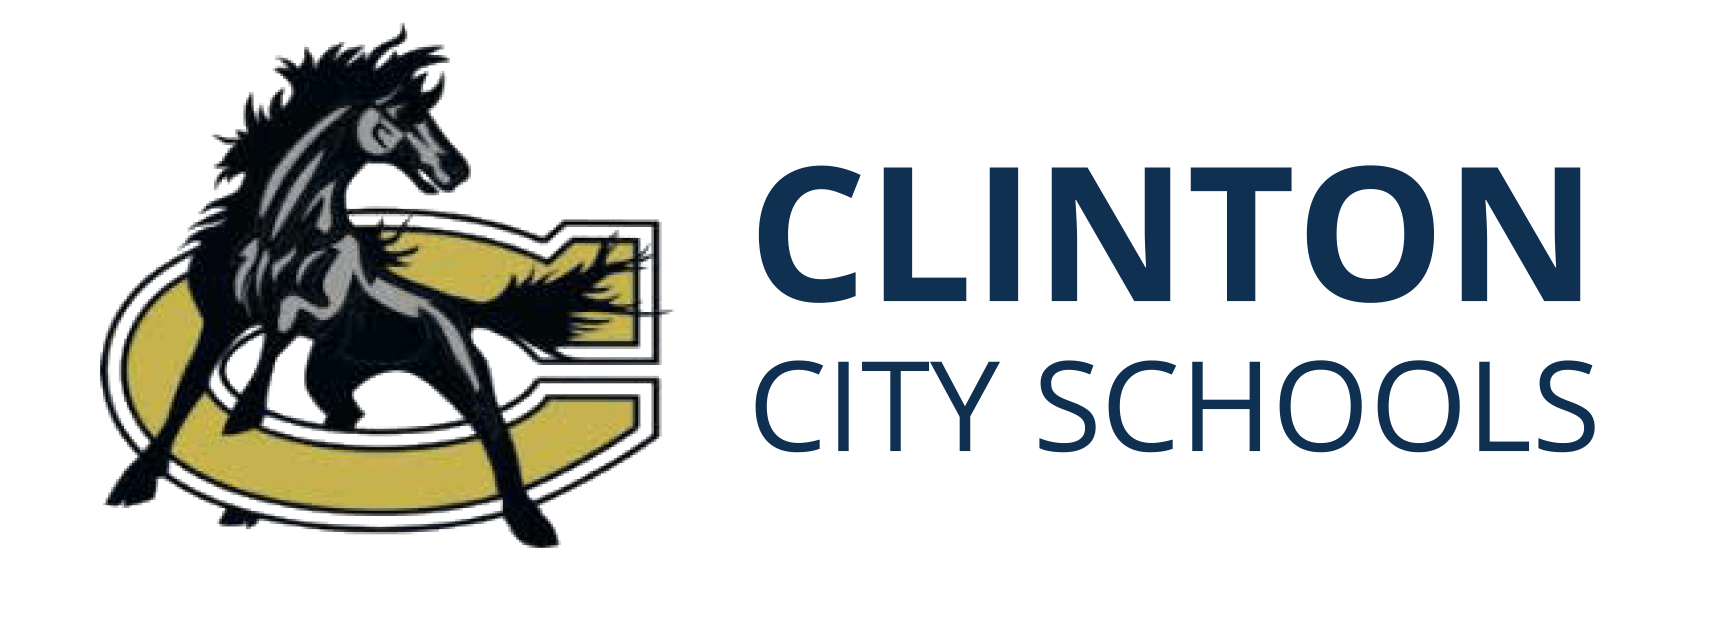 LC School Logo - Home - Clinton City Schools